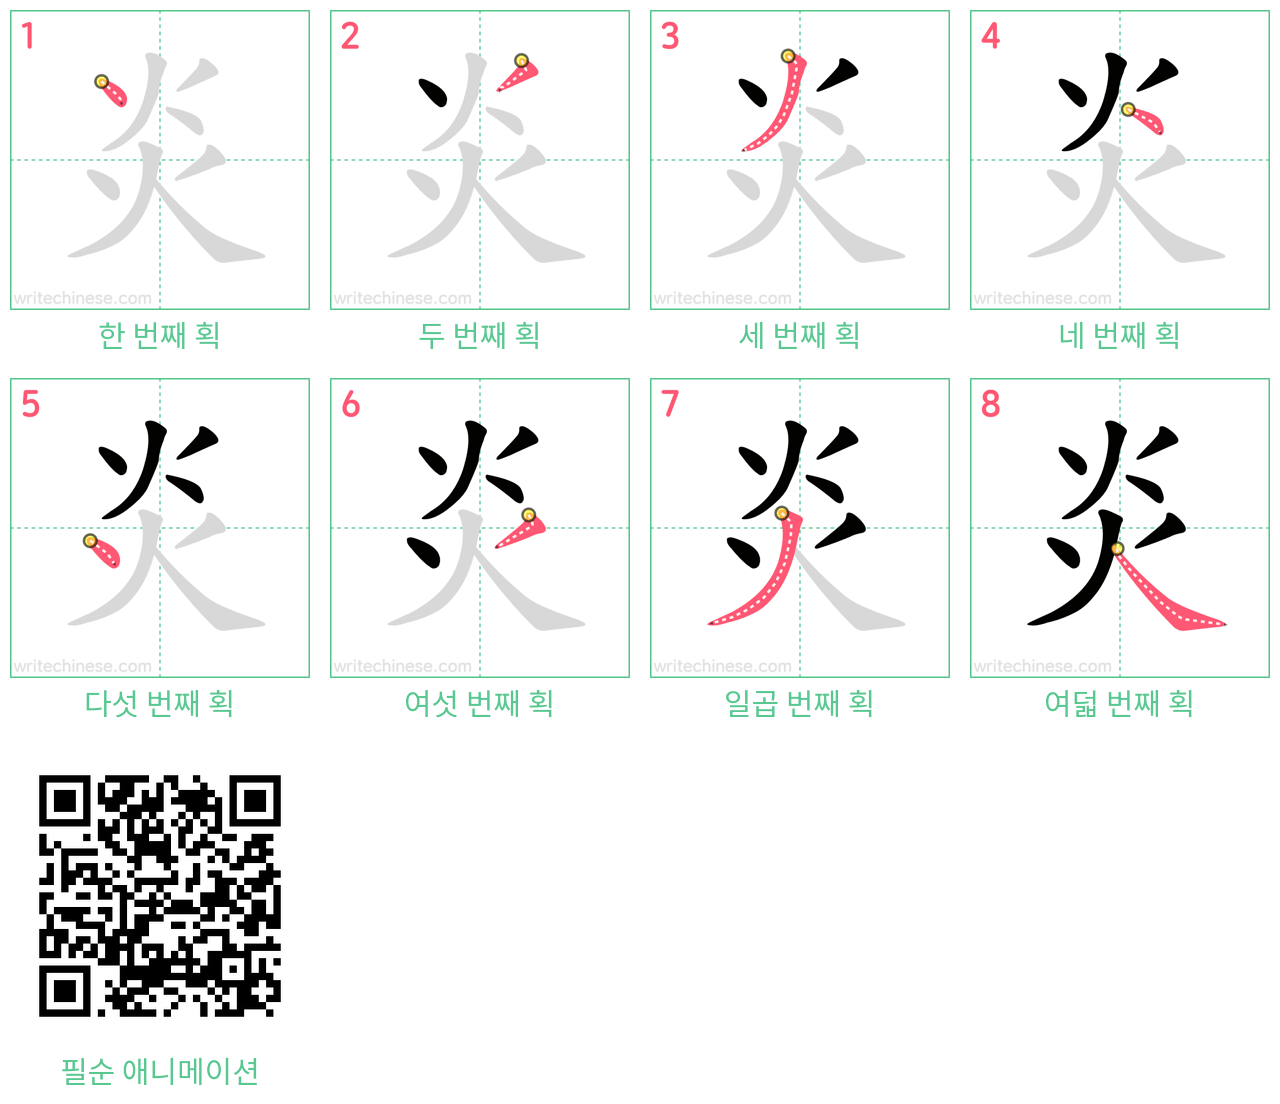 炎 step-by-step stroke order diagrams